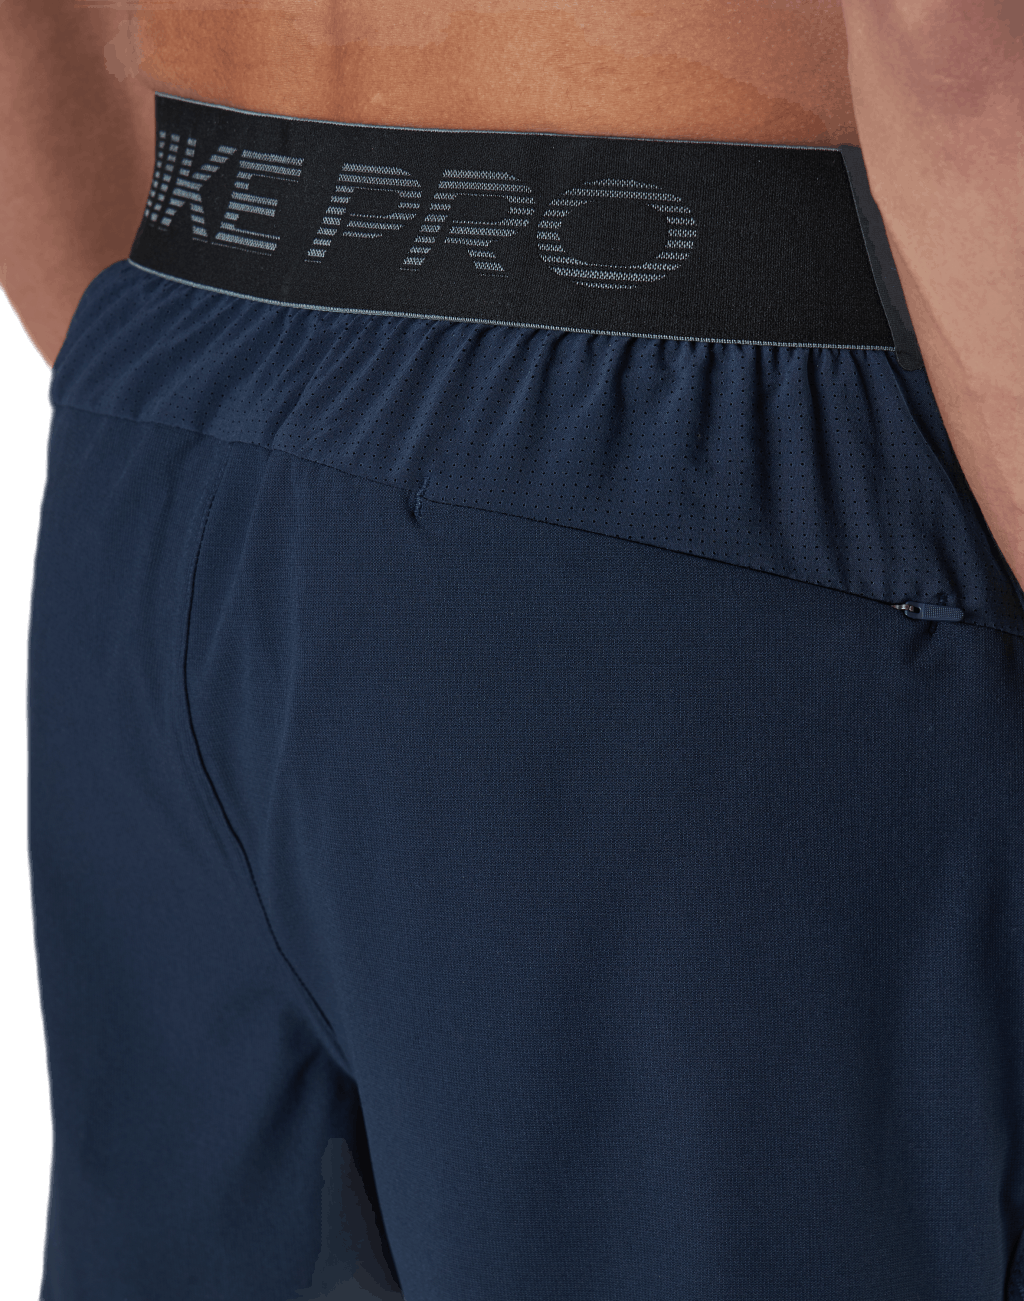 Nike Pro Shorts Blue/Black